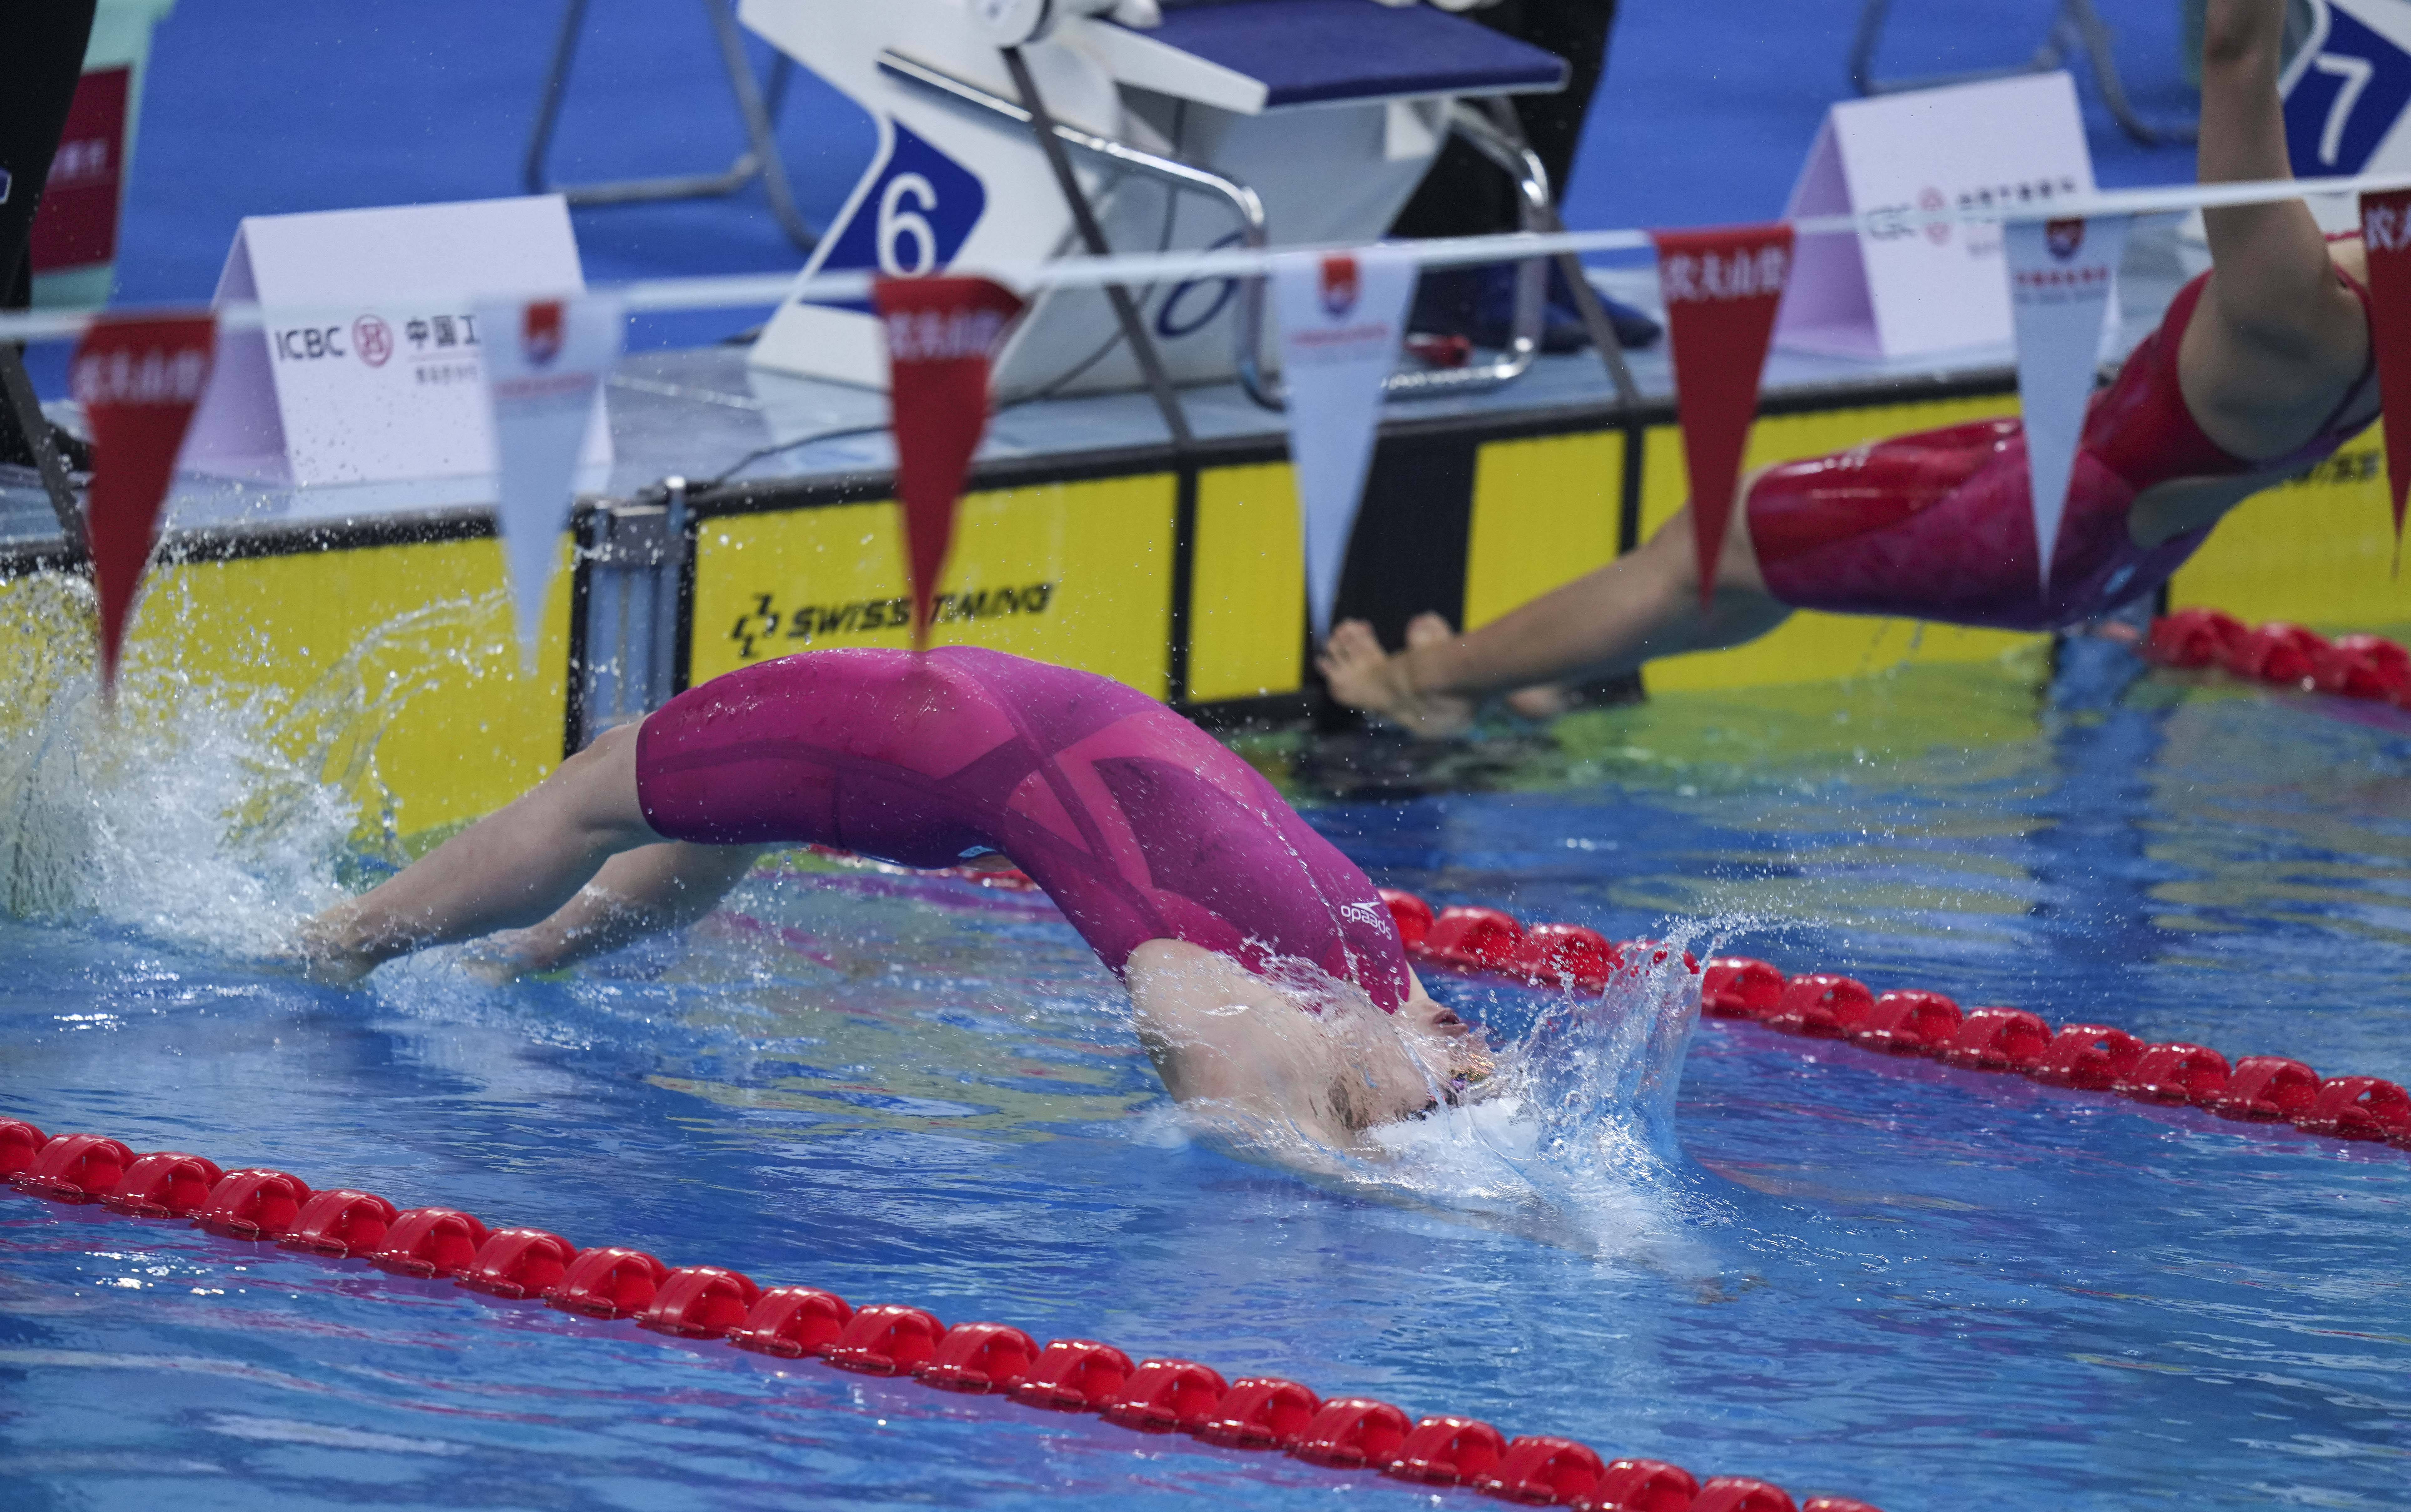 当日,在山东青岛举行的2021年全国游泳冠军赛暨东京奥运会选拔赛抛佑